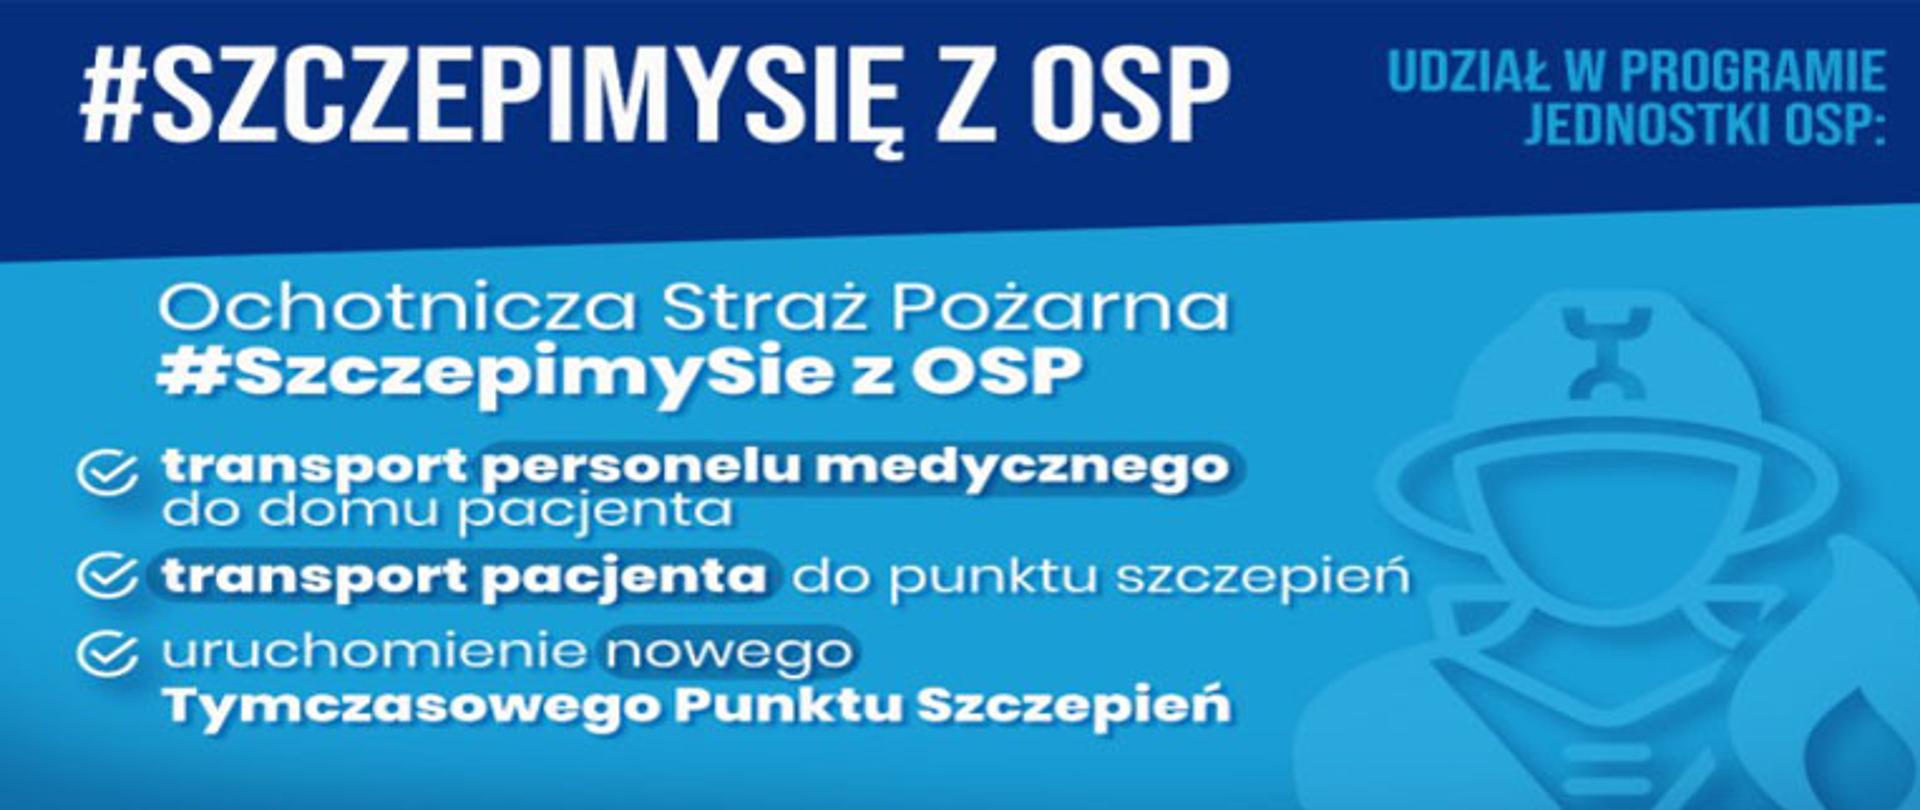 baner reklamowy z napisem #SzczepimySię z OSP